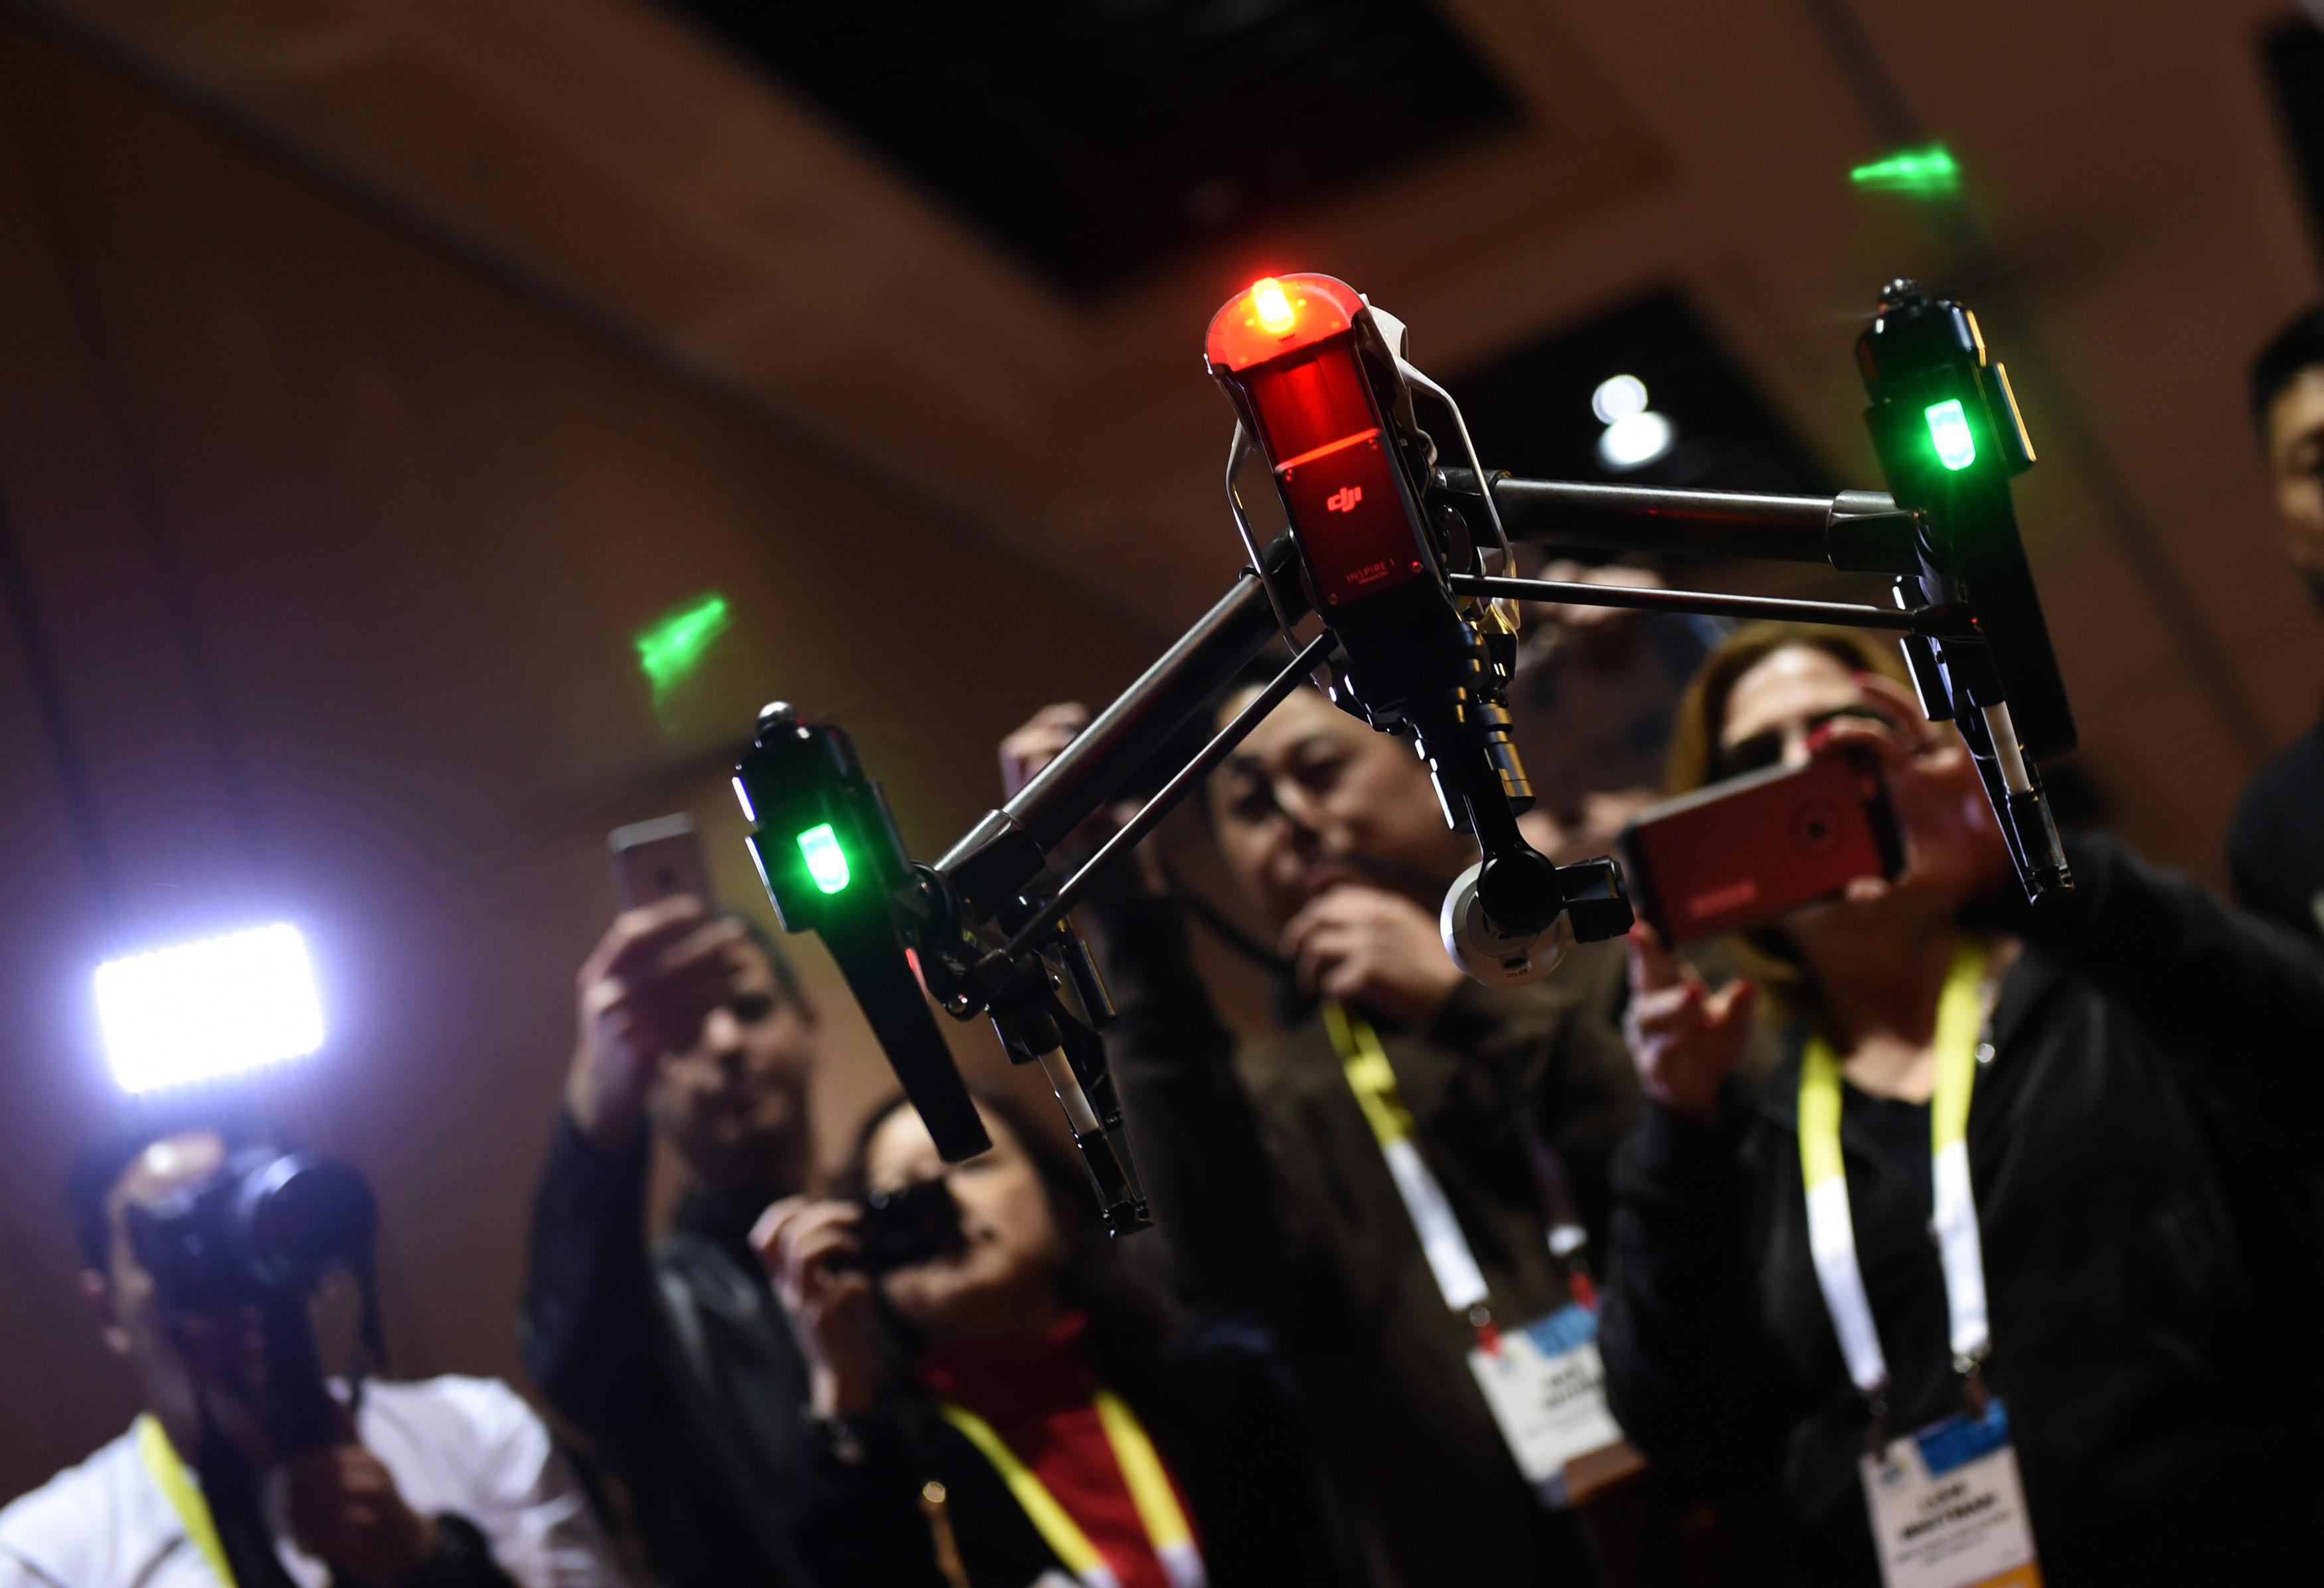 Il drone Dji Inspire 1 durante una dimostrazione al Ces 2015 di Las Vegas (Infophoto)